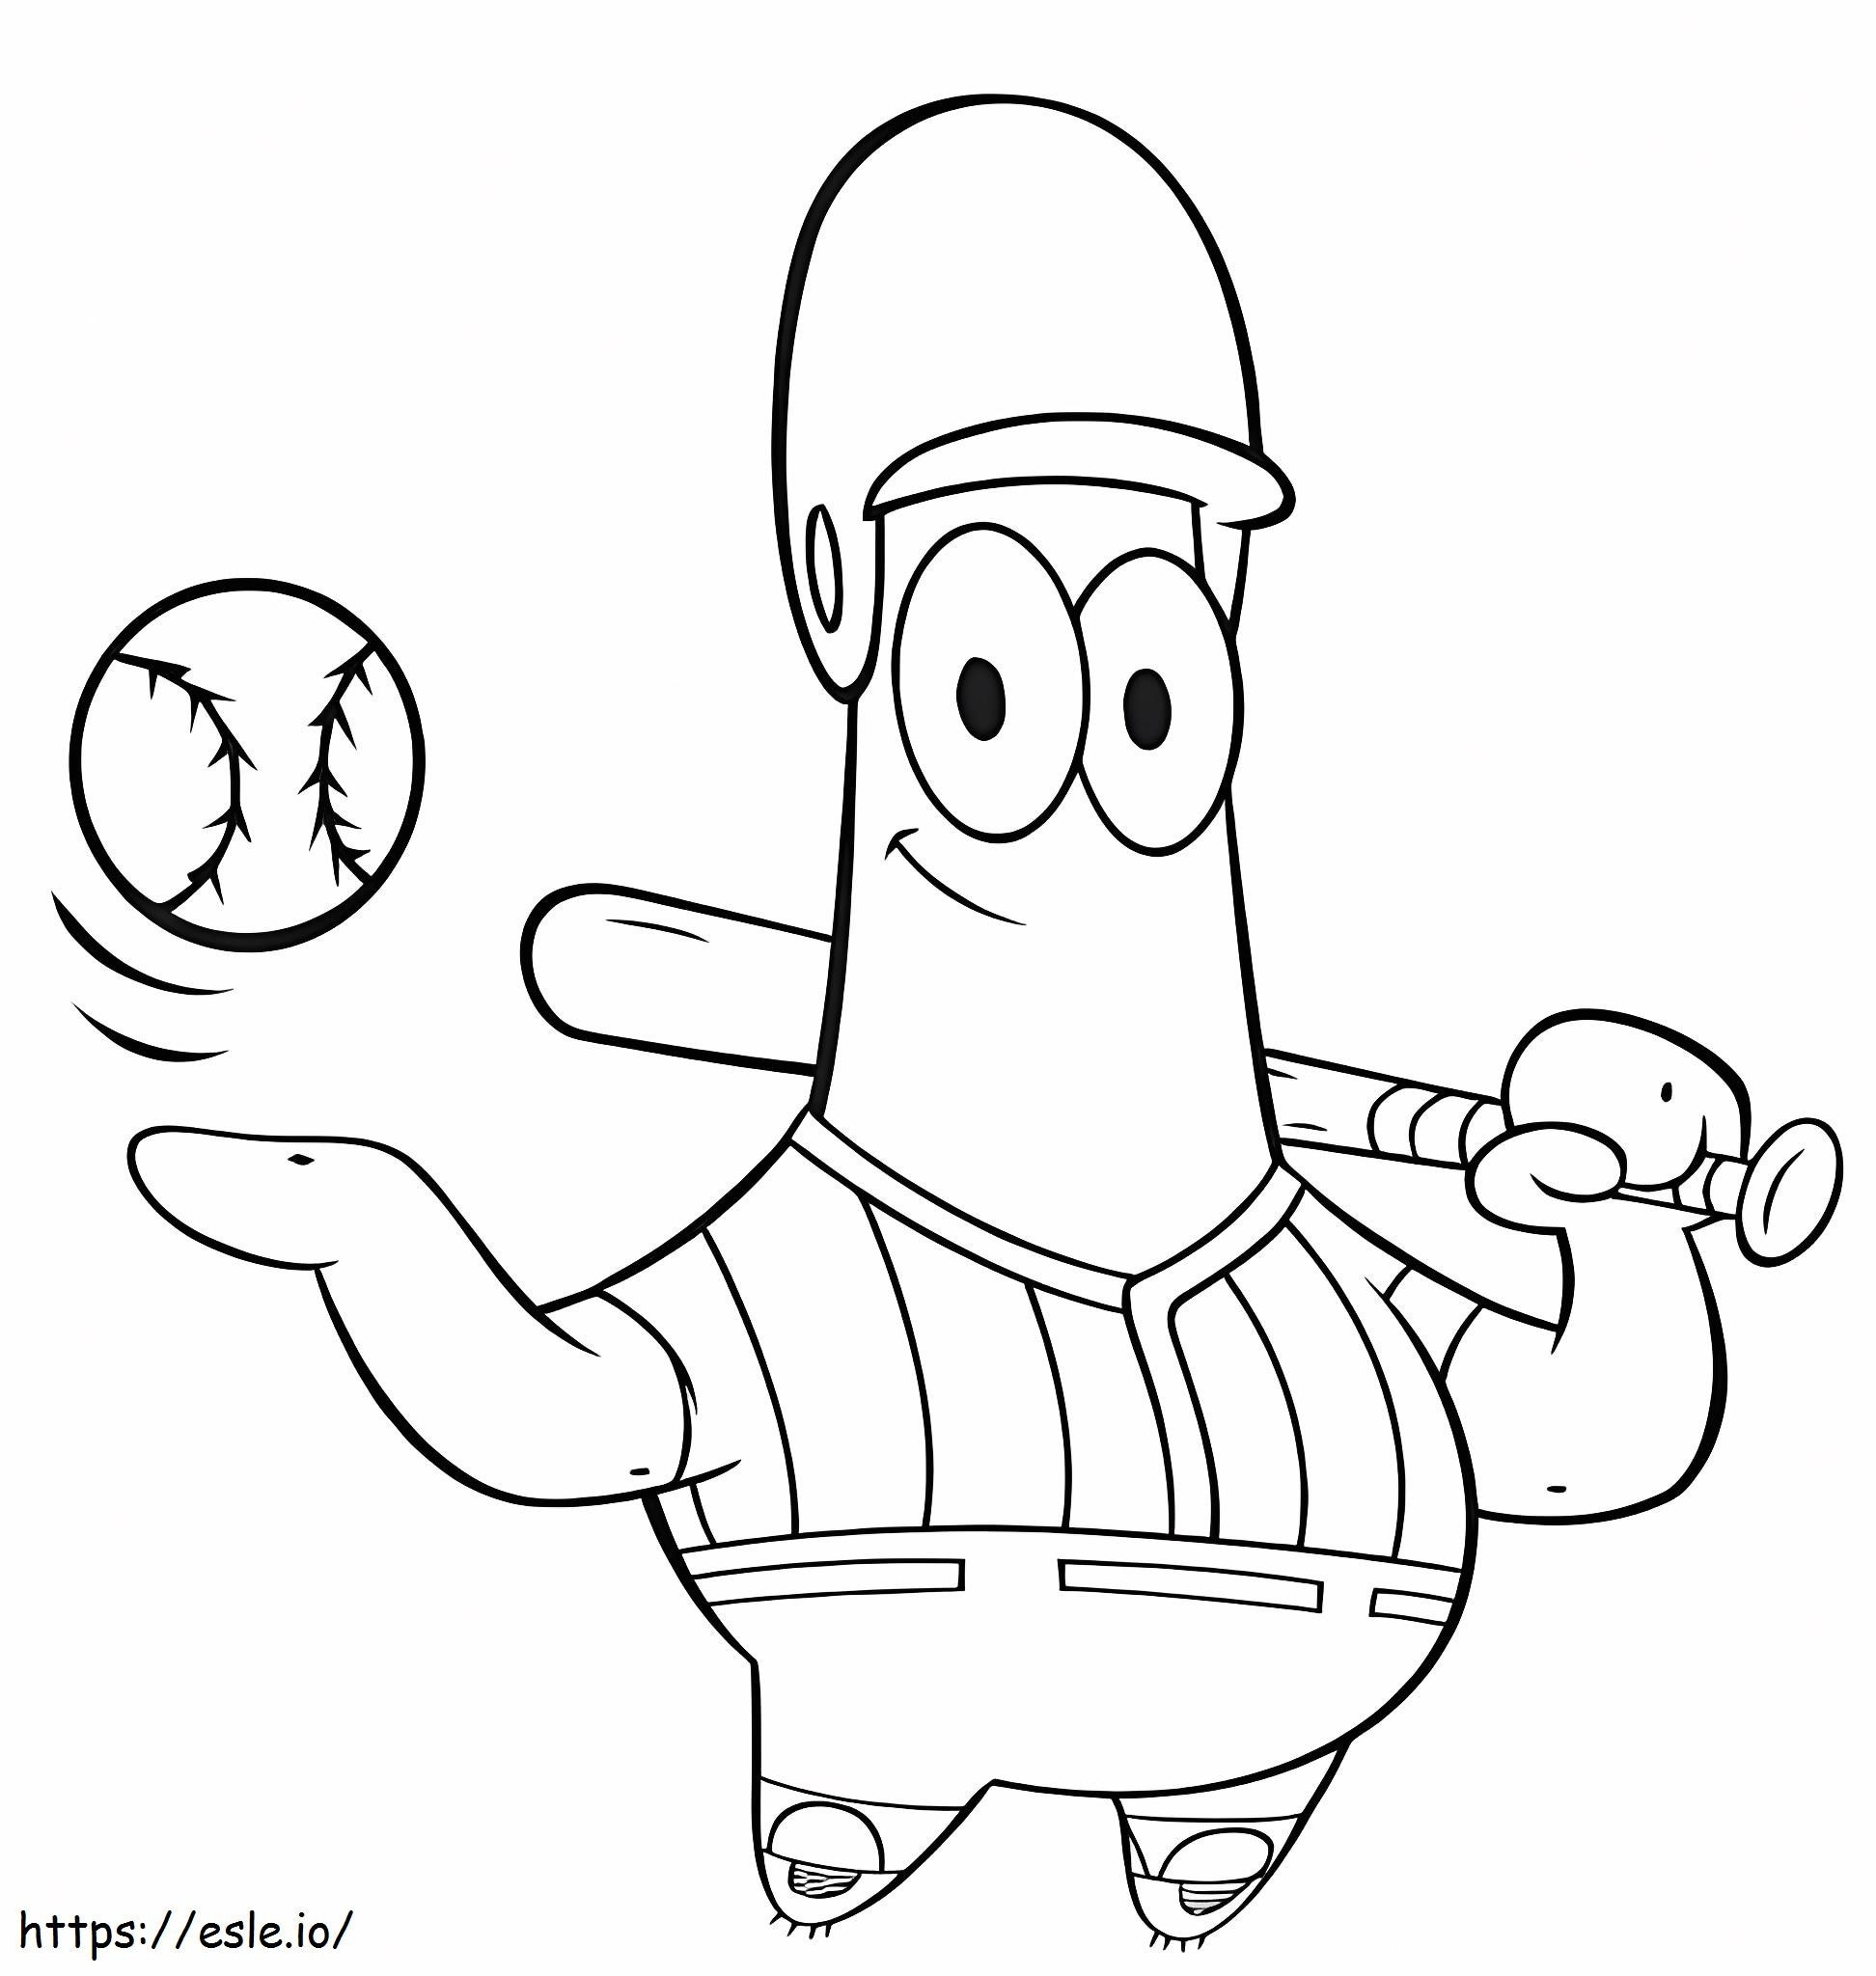 Baseballspieler Patrick Star ausmalbilder